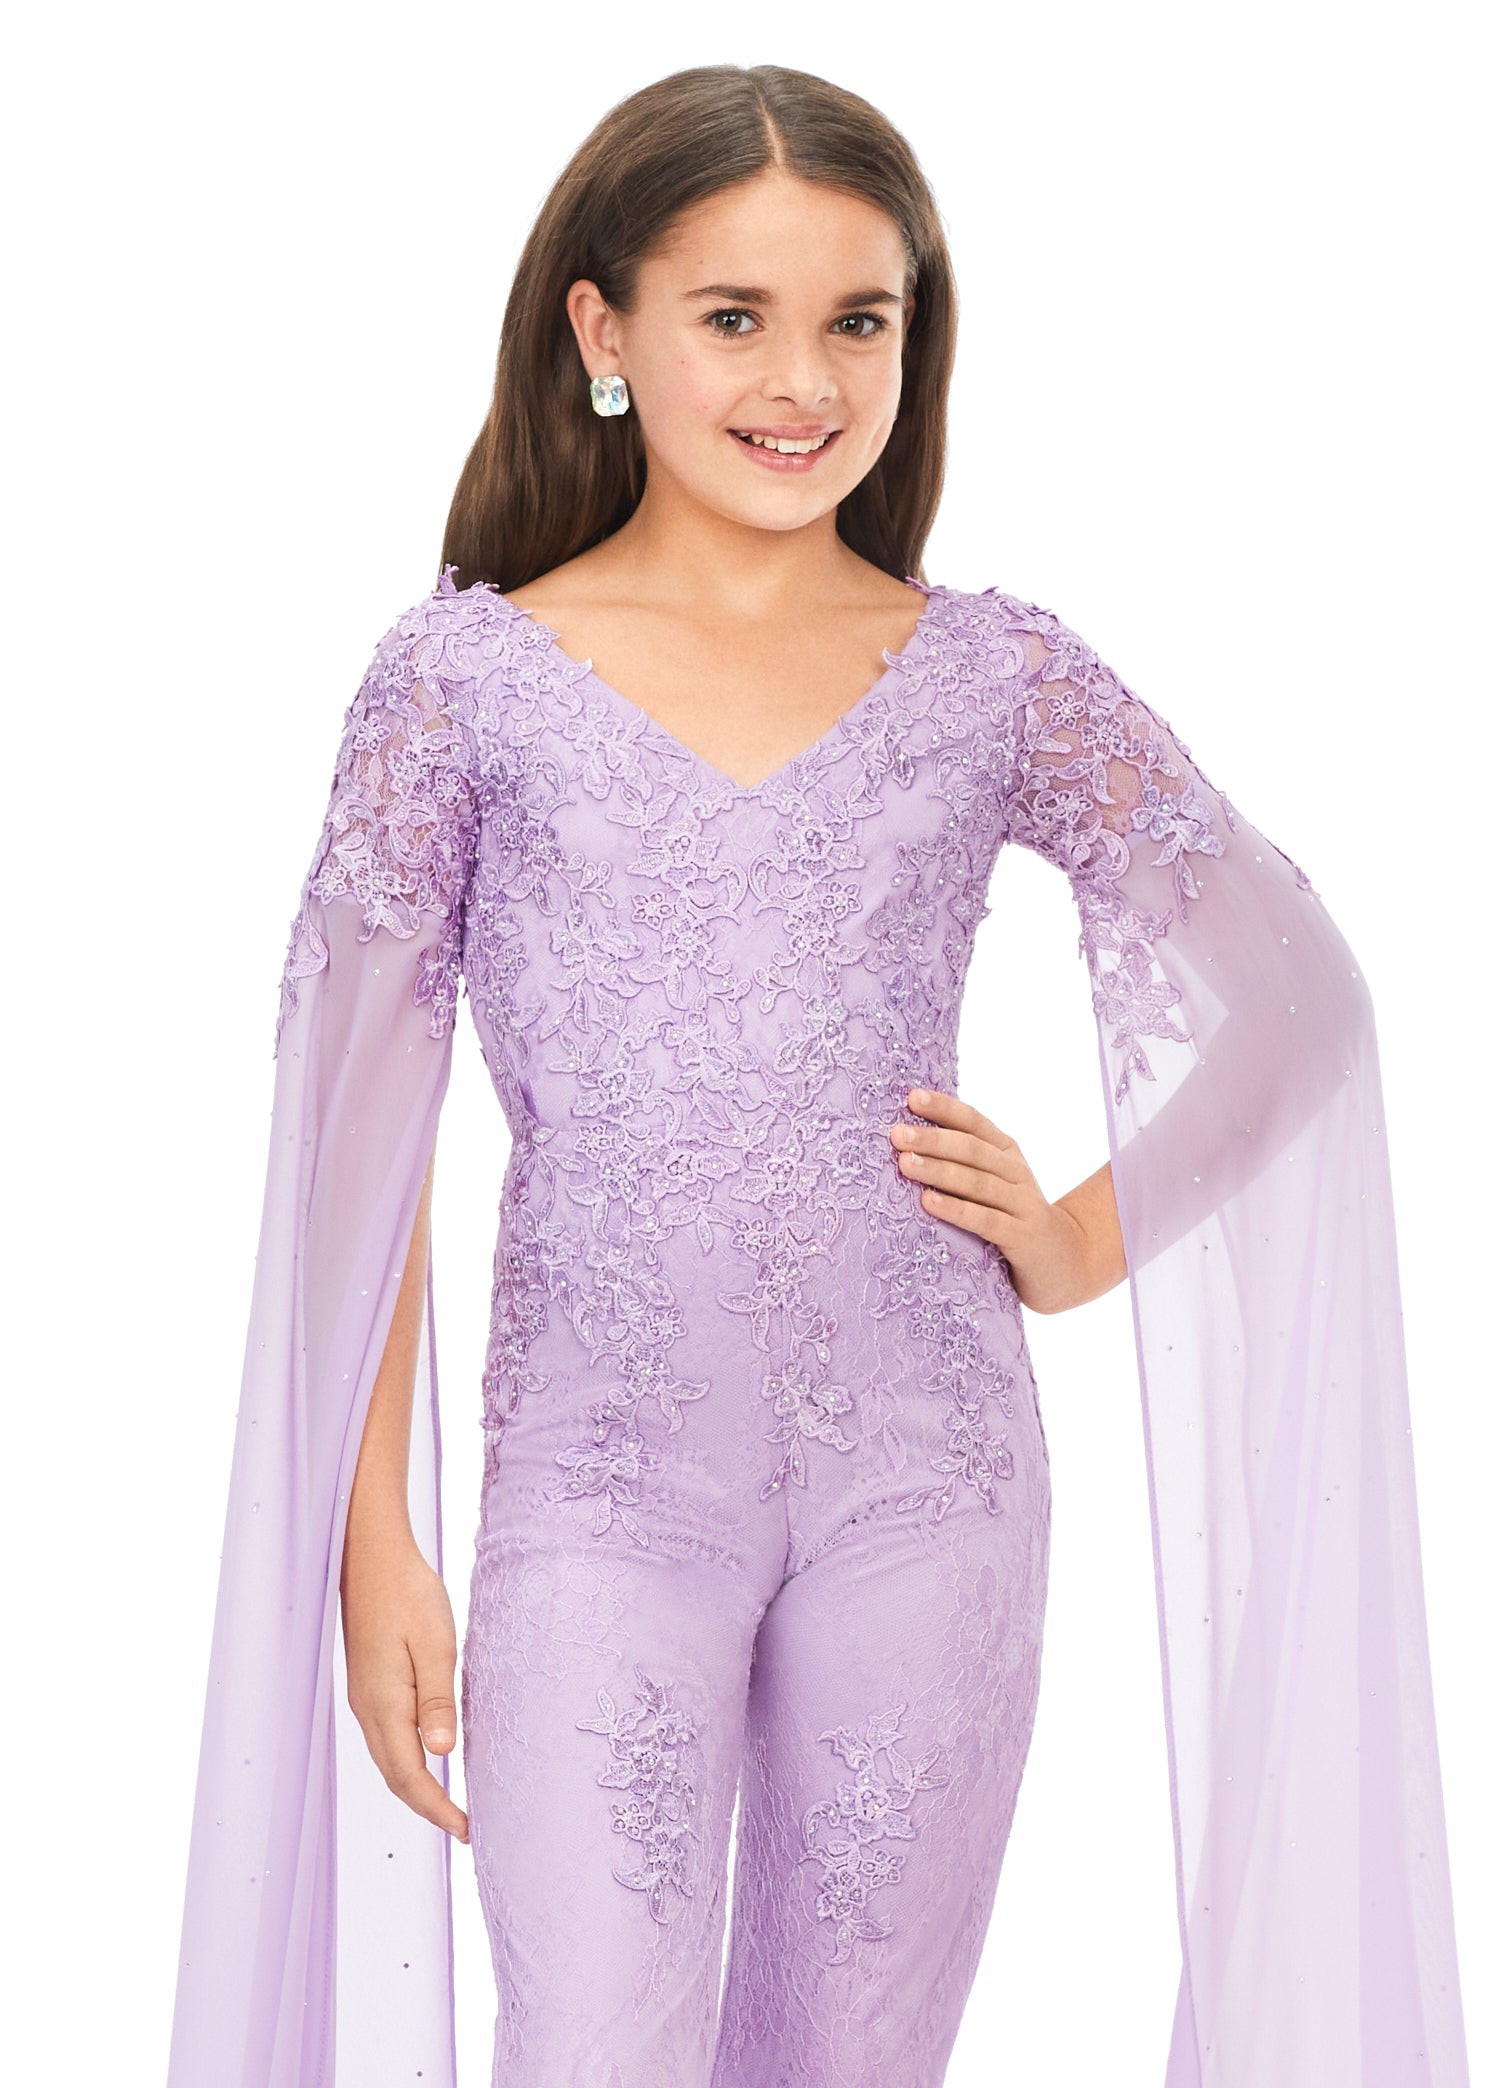 Ashley Lauren Kids 8162 Size 6, 10, 14 Lilac Lace Girls Jumpsuit